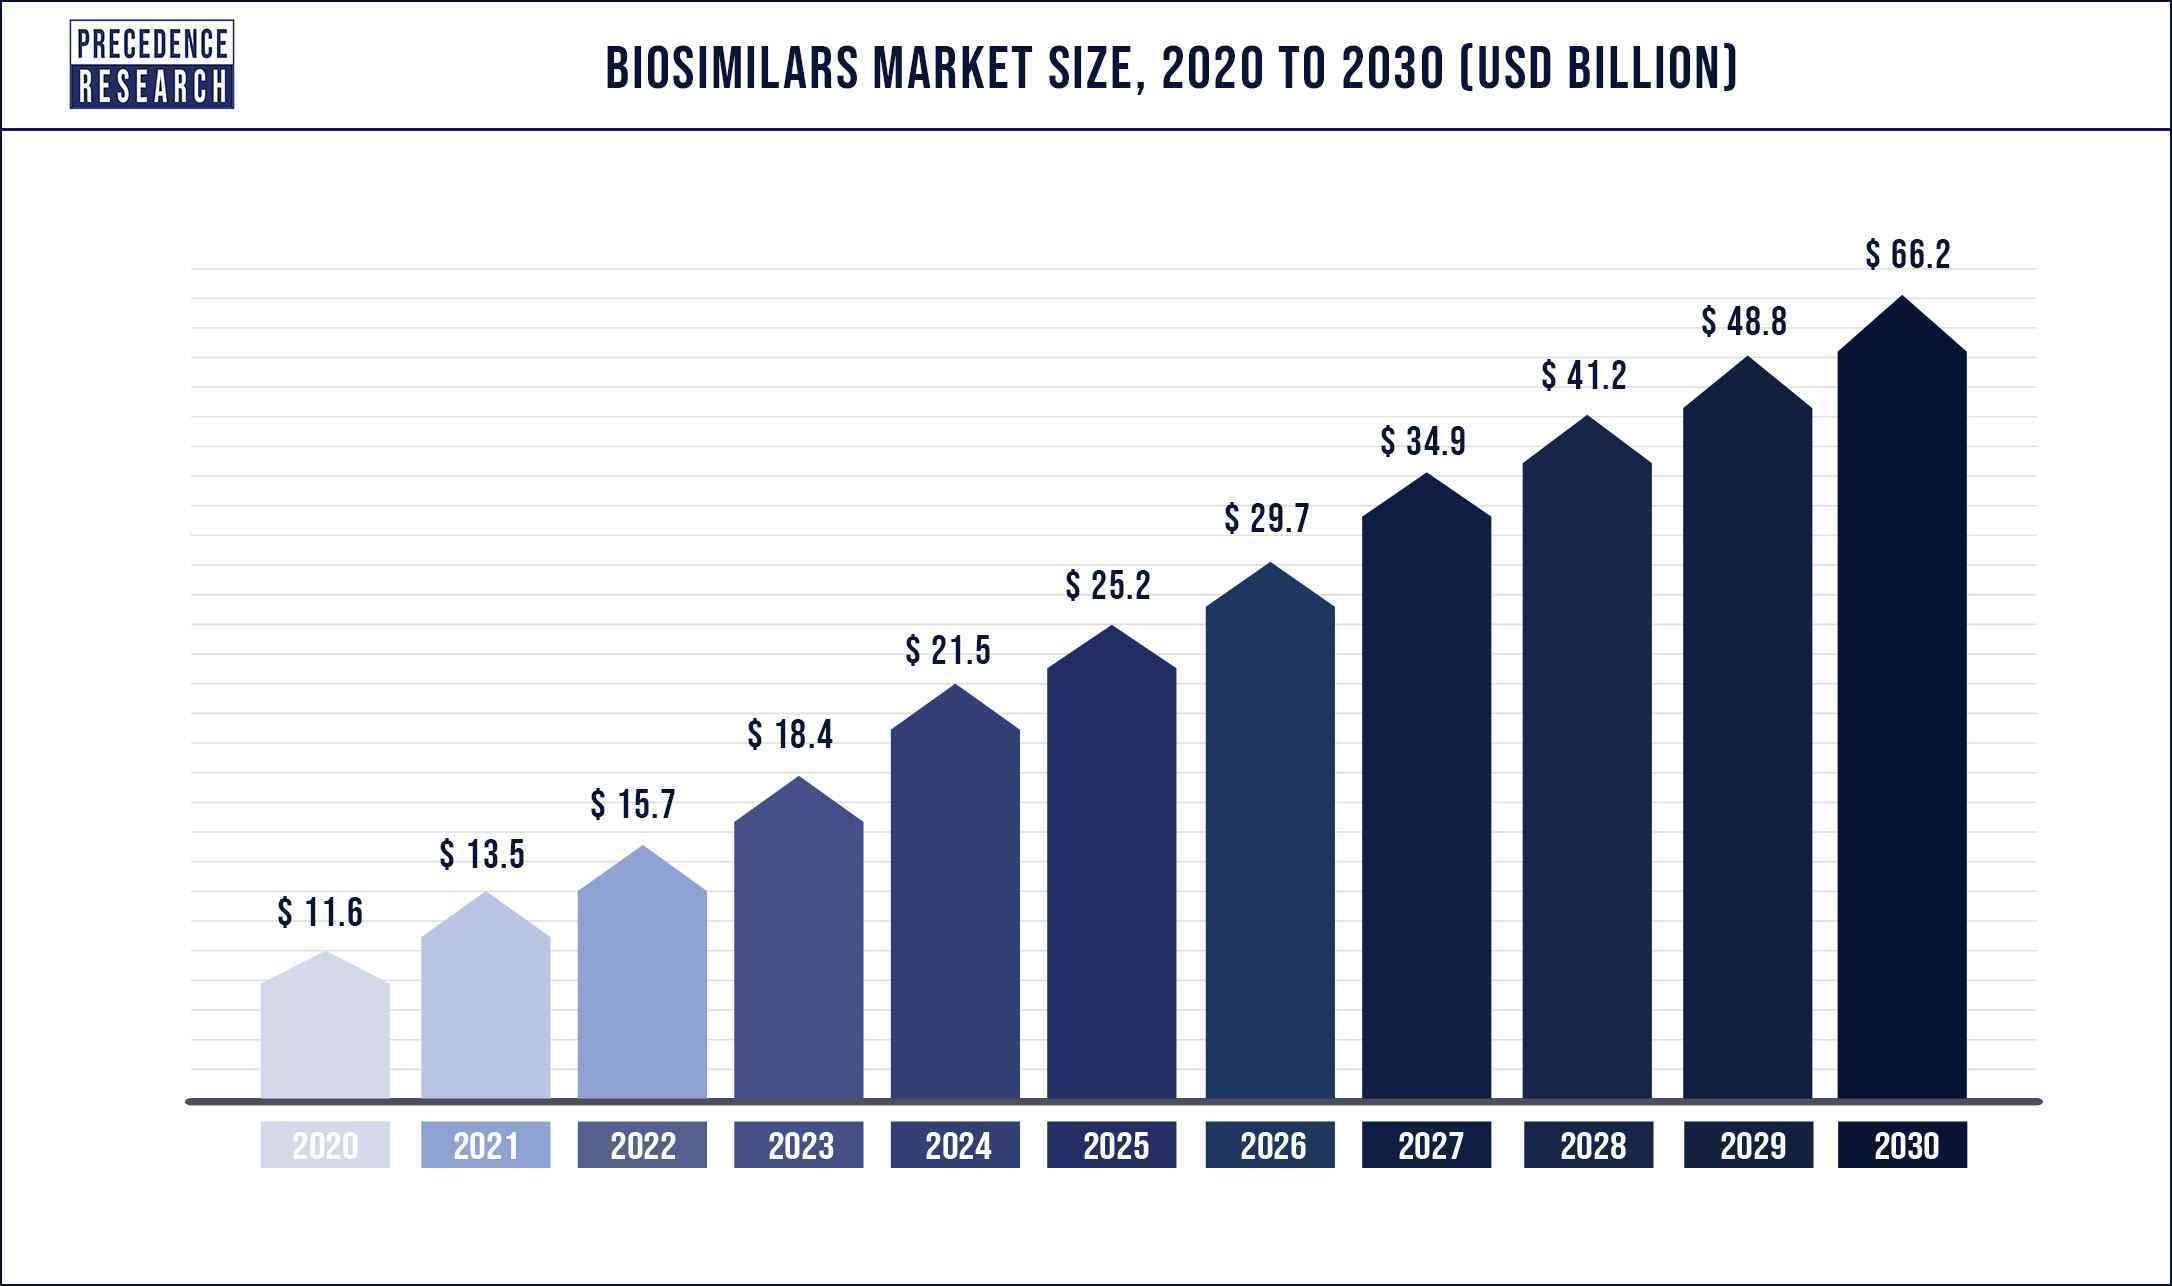 Biosimilars Market Size 2020 to 2030